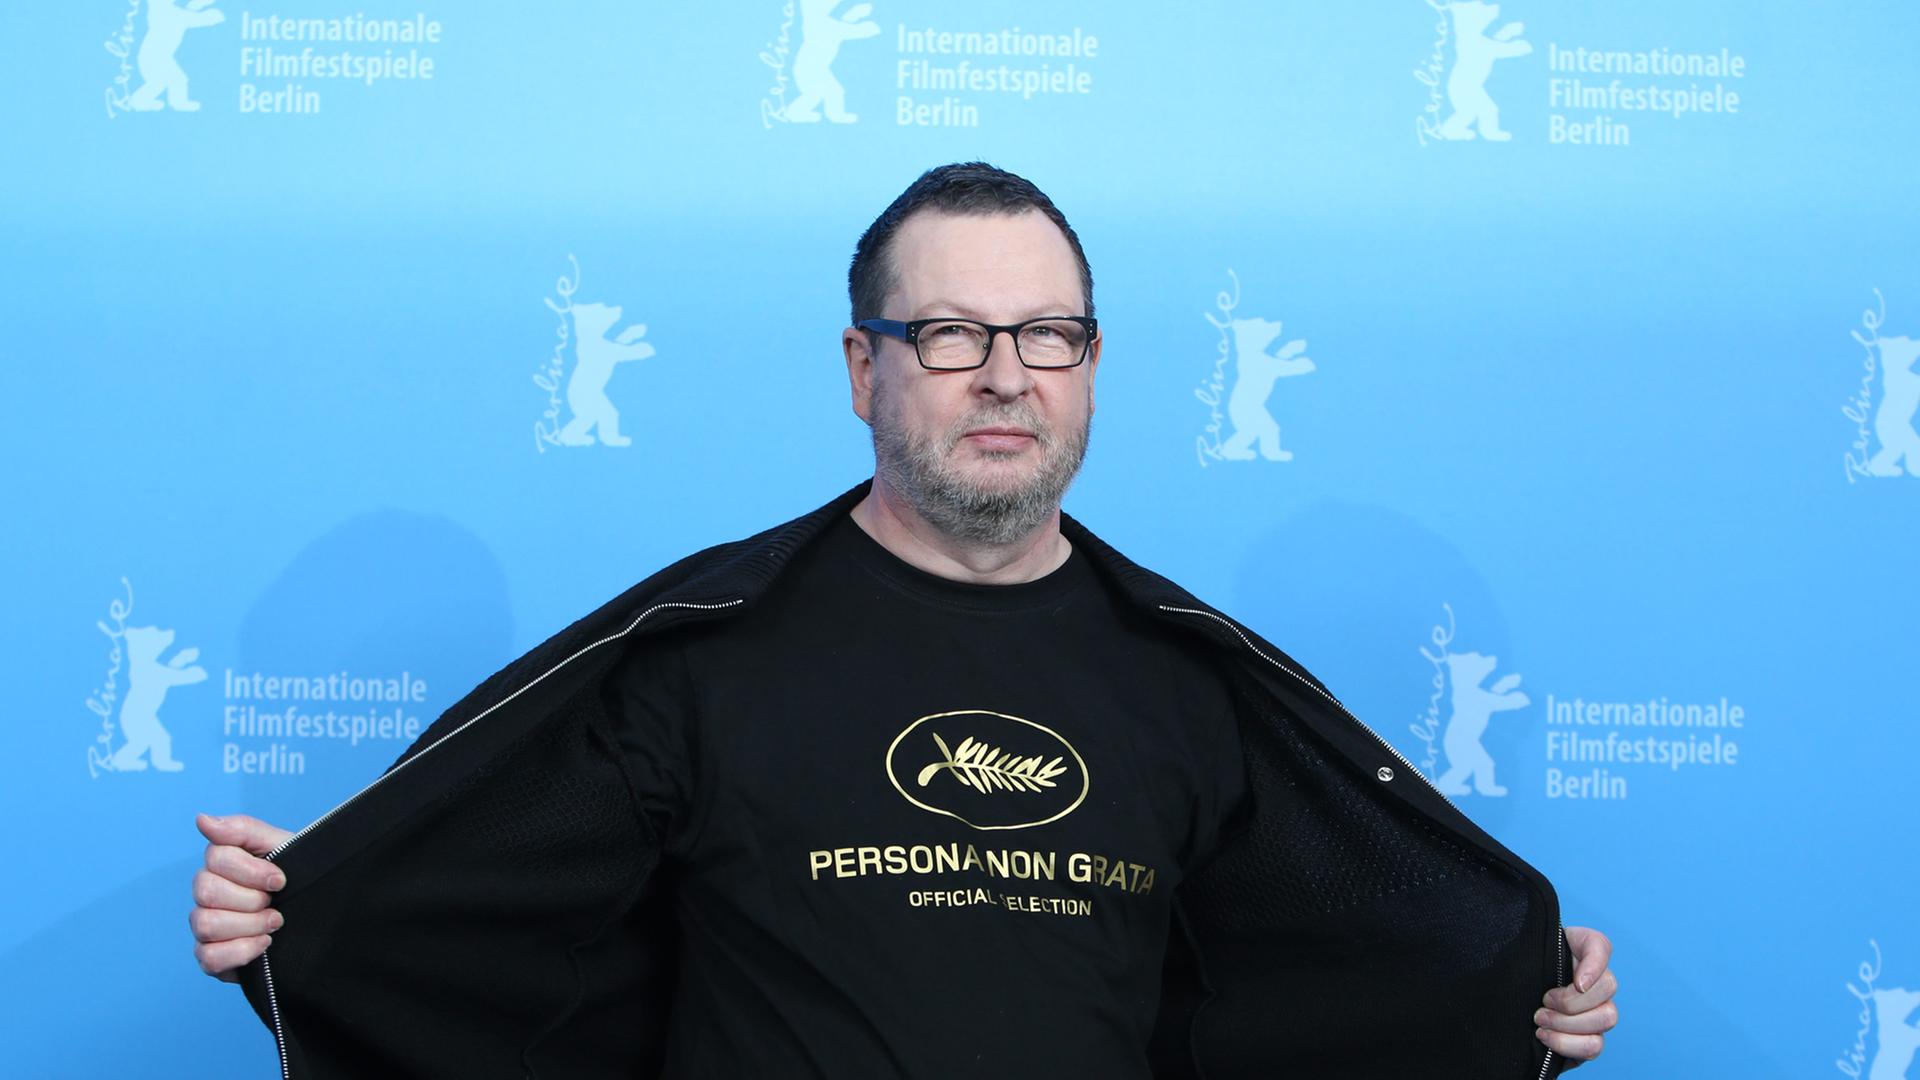 "Persona non grata": Lars von Trier erinnerte bei der Berlinale mit einem T-Shirt an seinen provokanten Auftritt in Cannes.